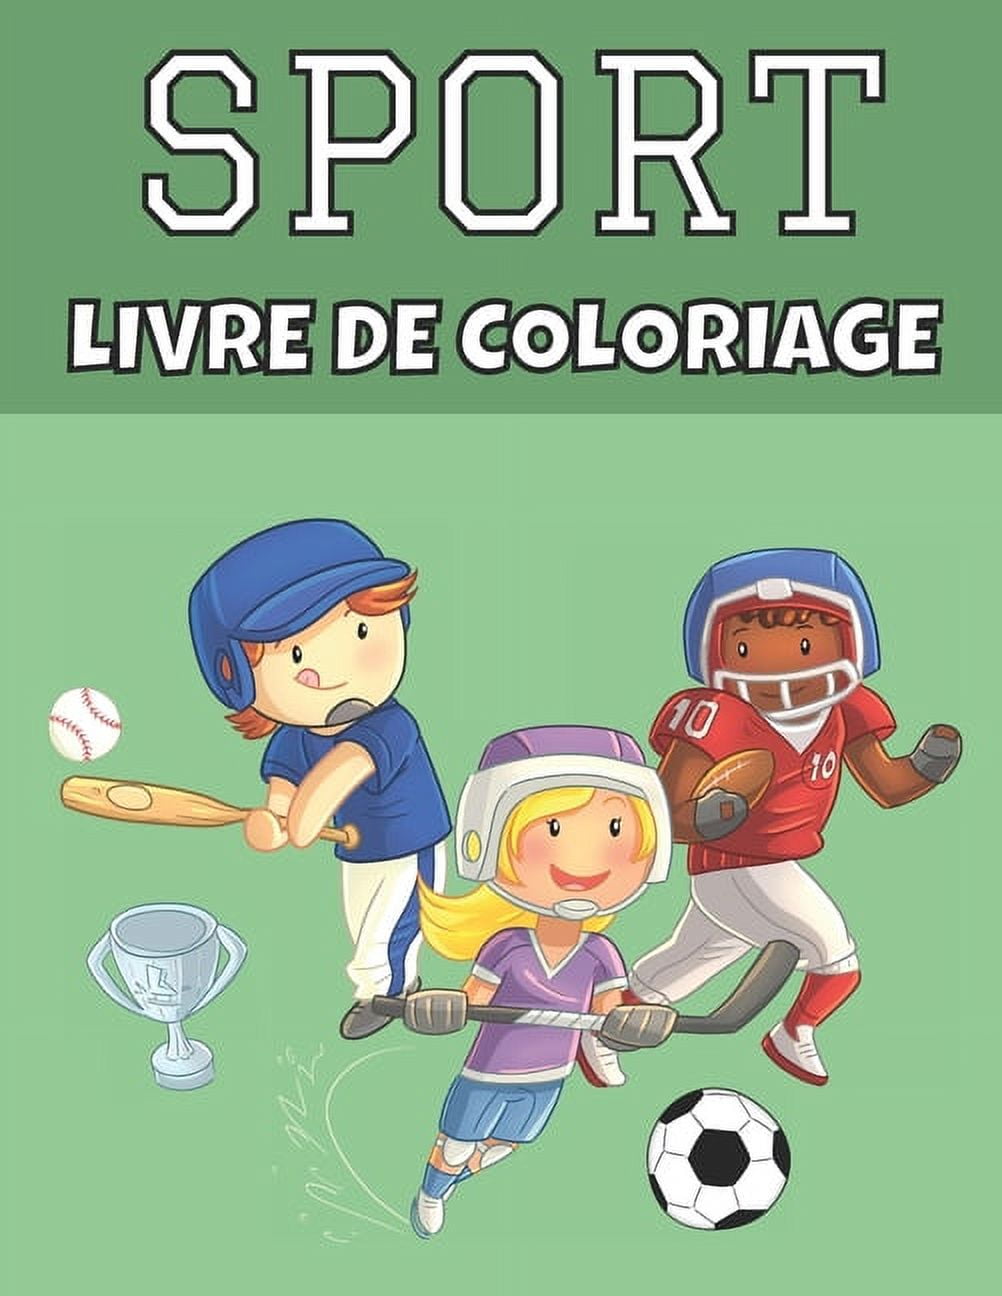 Sport livre de coloriage: Football, tennis, hockey et plus encore - Pages à  colorier pour les enfants de 4 ans - Super cadeau pour les garçons et les  filles pour leur anniversaire